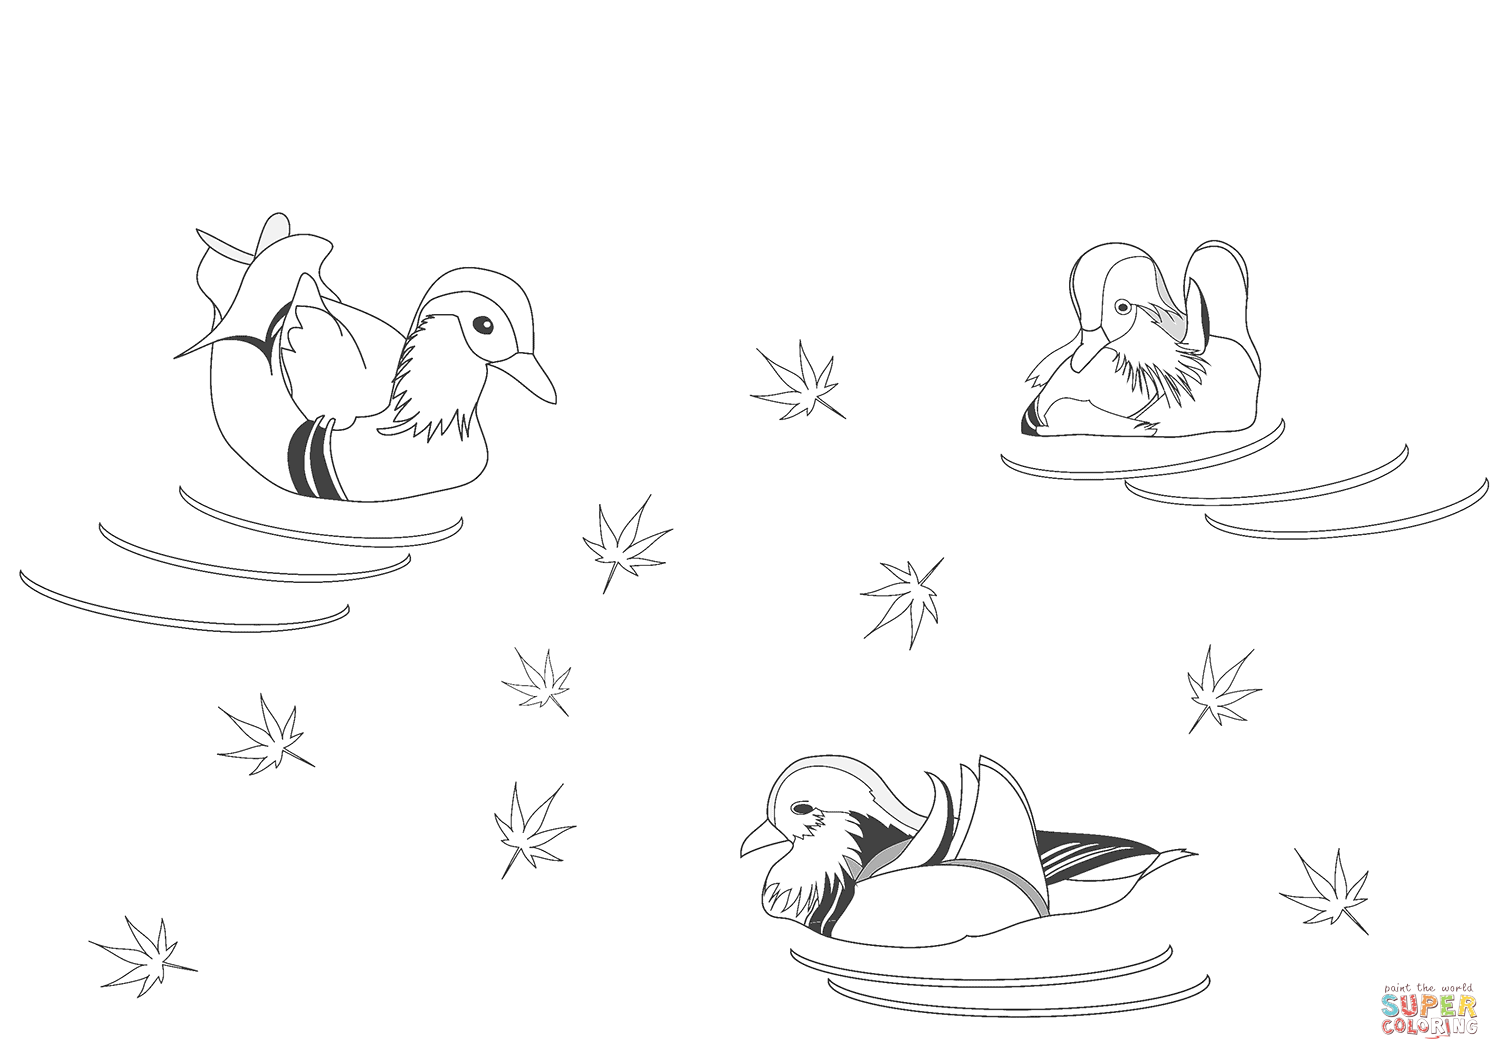 Раскраска Самец и самка утки-мандаринки в поисках еды на берегу реки